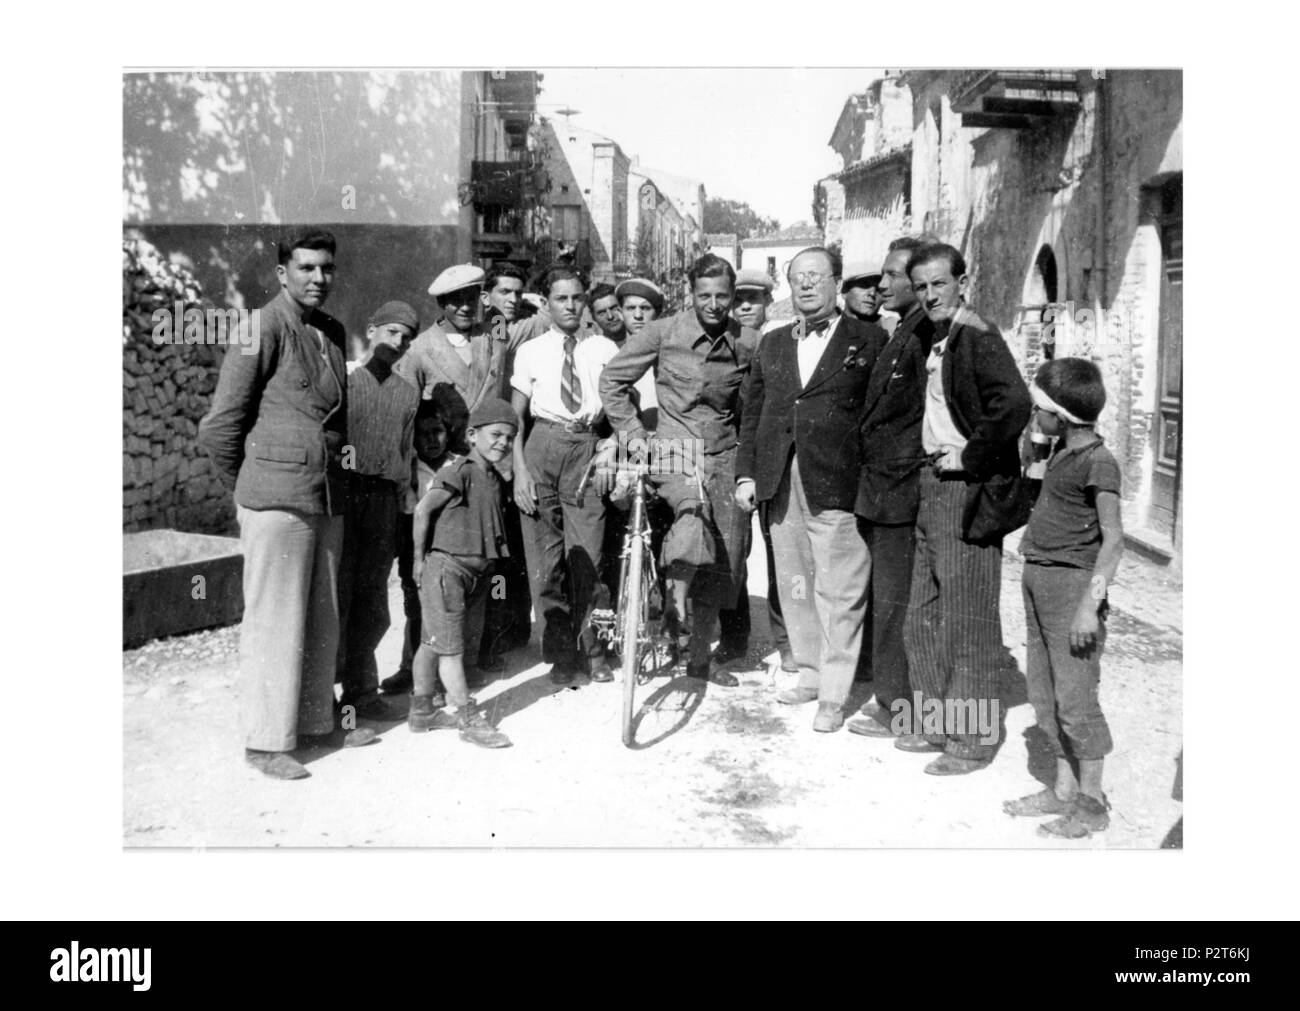 . English: Group of people in a town of Abruzzo, probably Alanno. Italiano: Un gruppo di persone in un paese dell'Abruzzo, probabilmente Alanno. 1930s. Unknown 38 Group in Italy Stock Photo